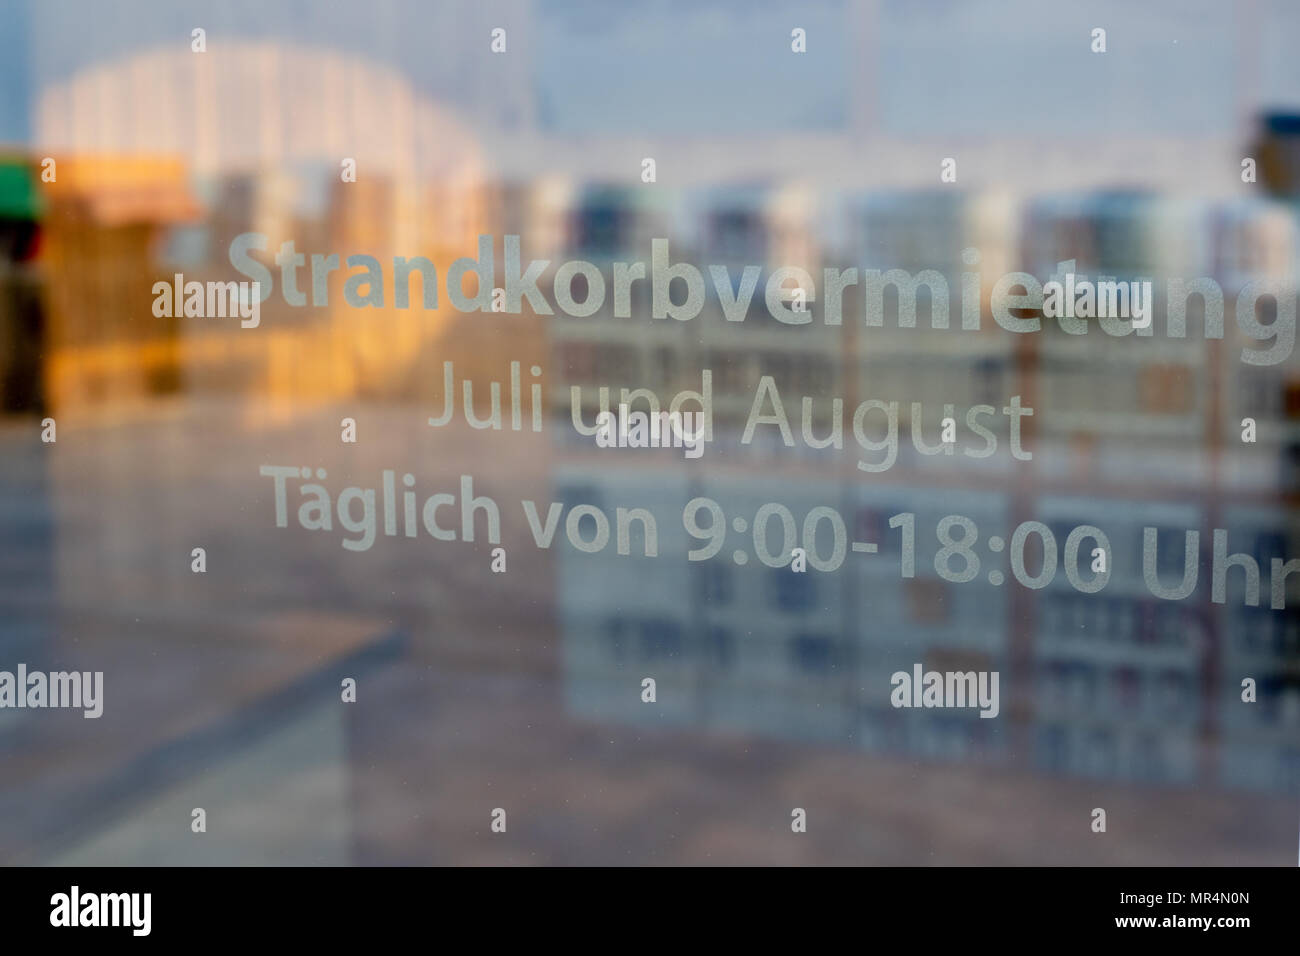 In der Nähe der Zeichen bei glastür Anzeige die deutschen Wörter für: Strandkorbverleih täglich von Juli bis August verfügbar zwischen 9.00 und 18.00 Uhr Stockfoto